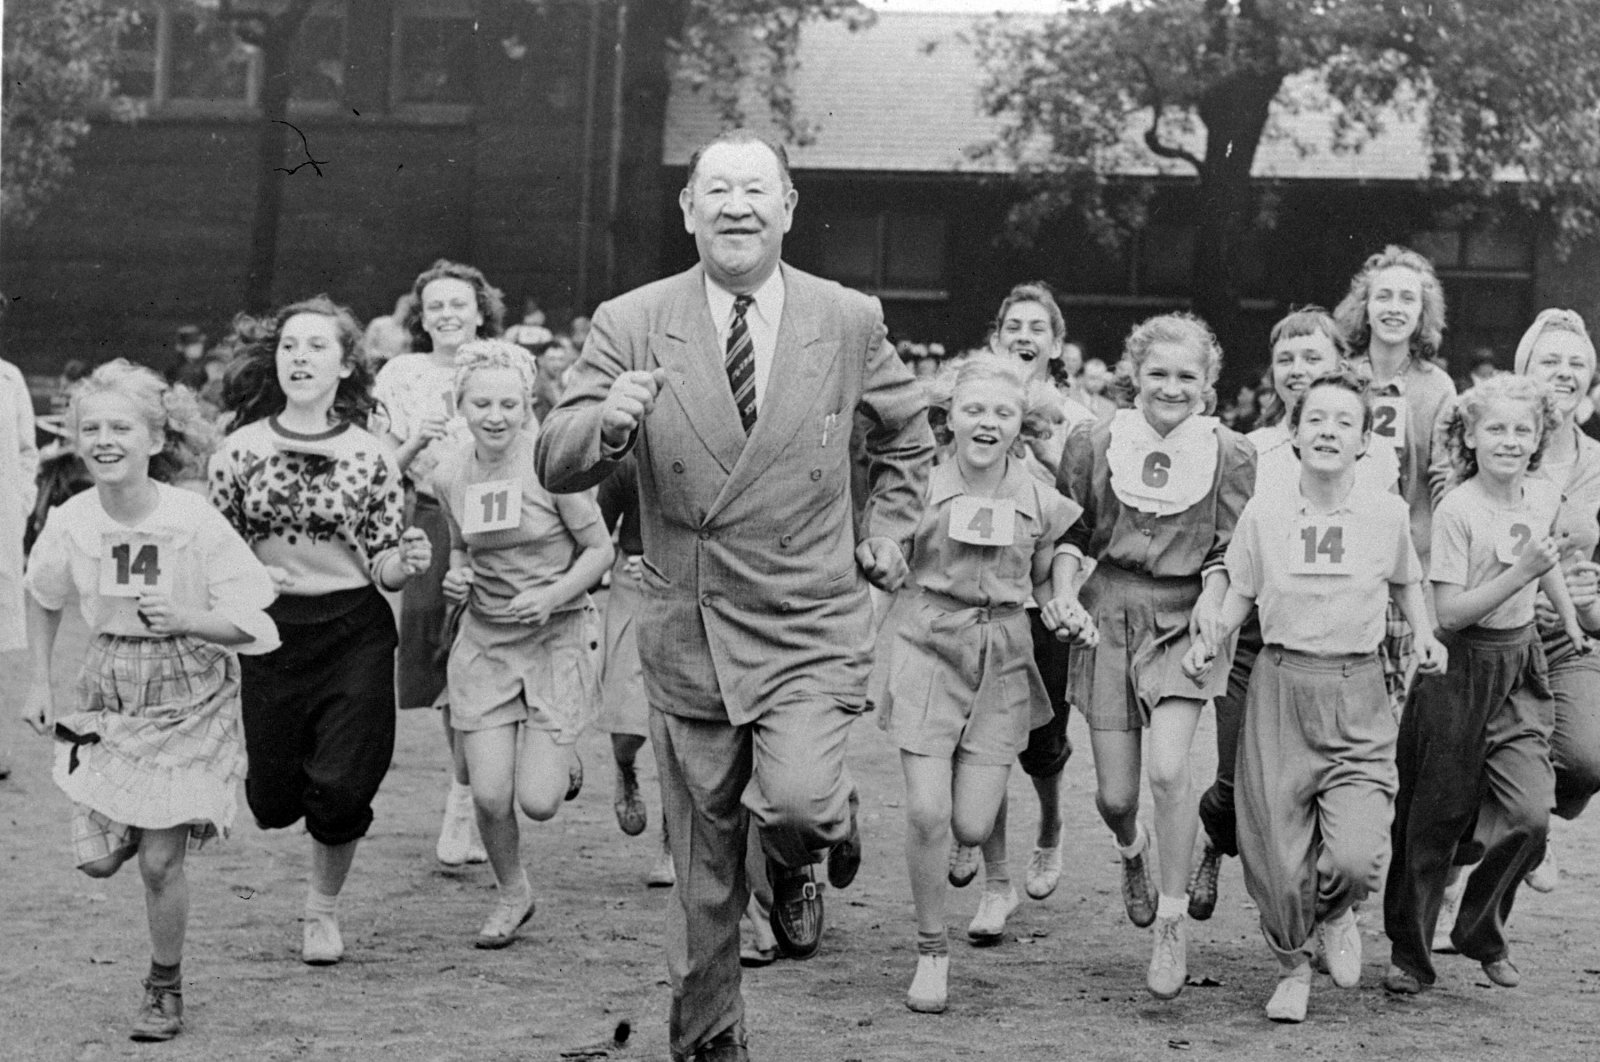 Jim Thorpe diangkat kembali sebagai pemenang Olimpiade lebih dari satu abad kemudian